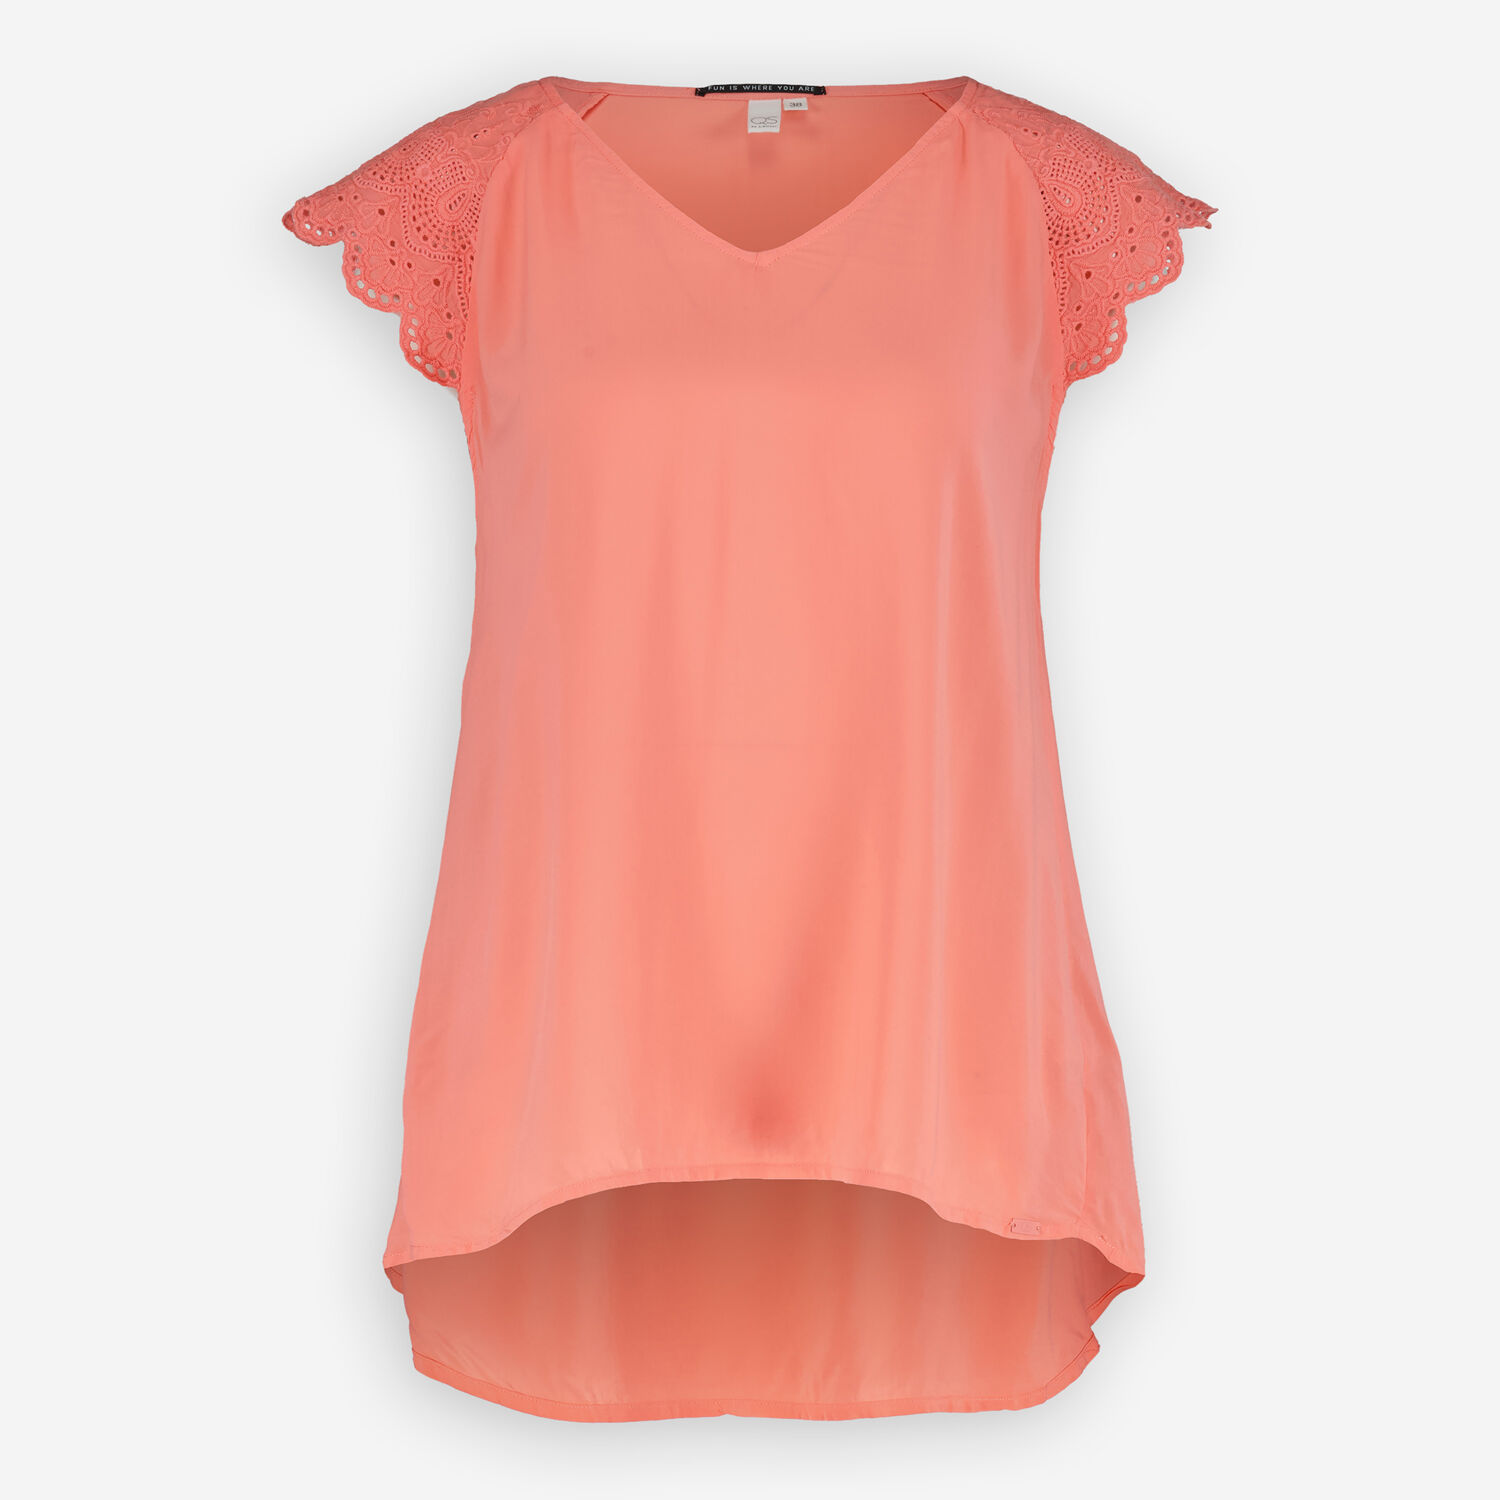 Розовая блузка без рукавов с вышивкой на плечах QS by s. Oliver футболка qs by s oliver артикул 50 2 51 12 130 2127630 цвет white 01d0 размер l